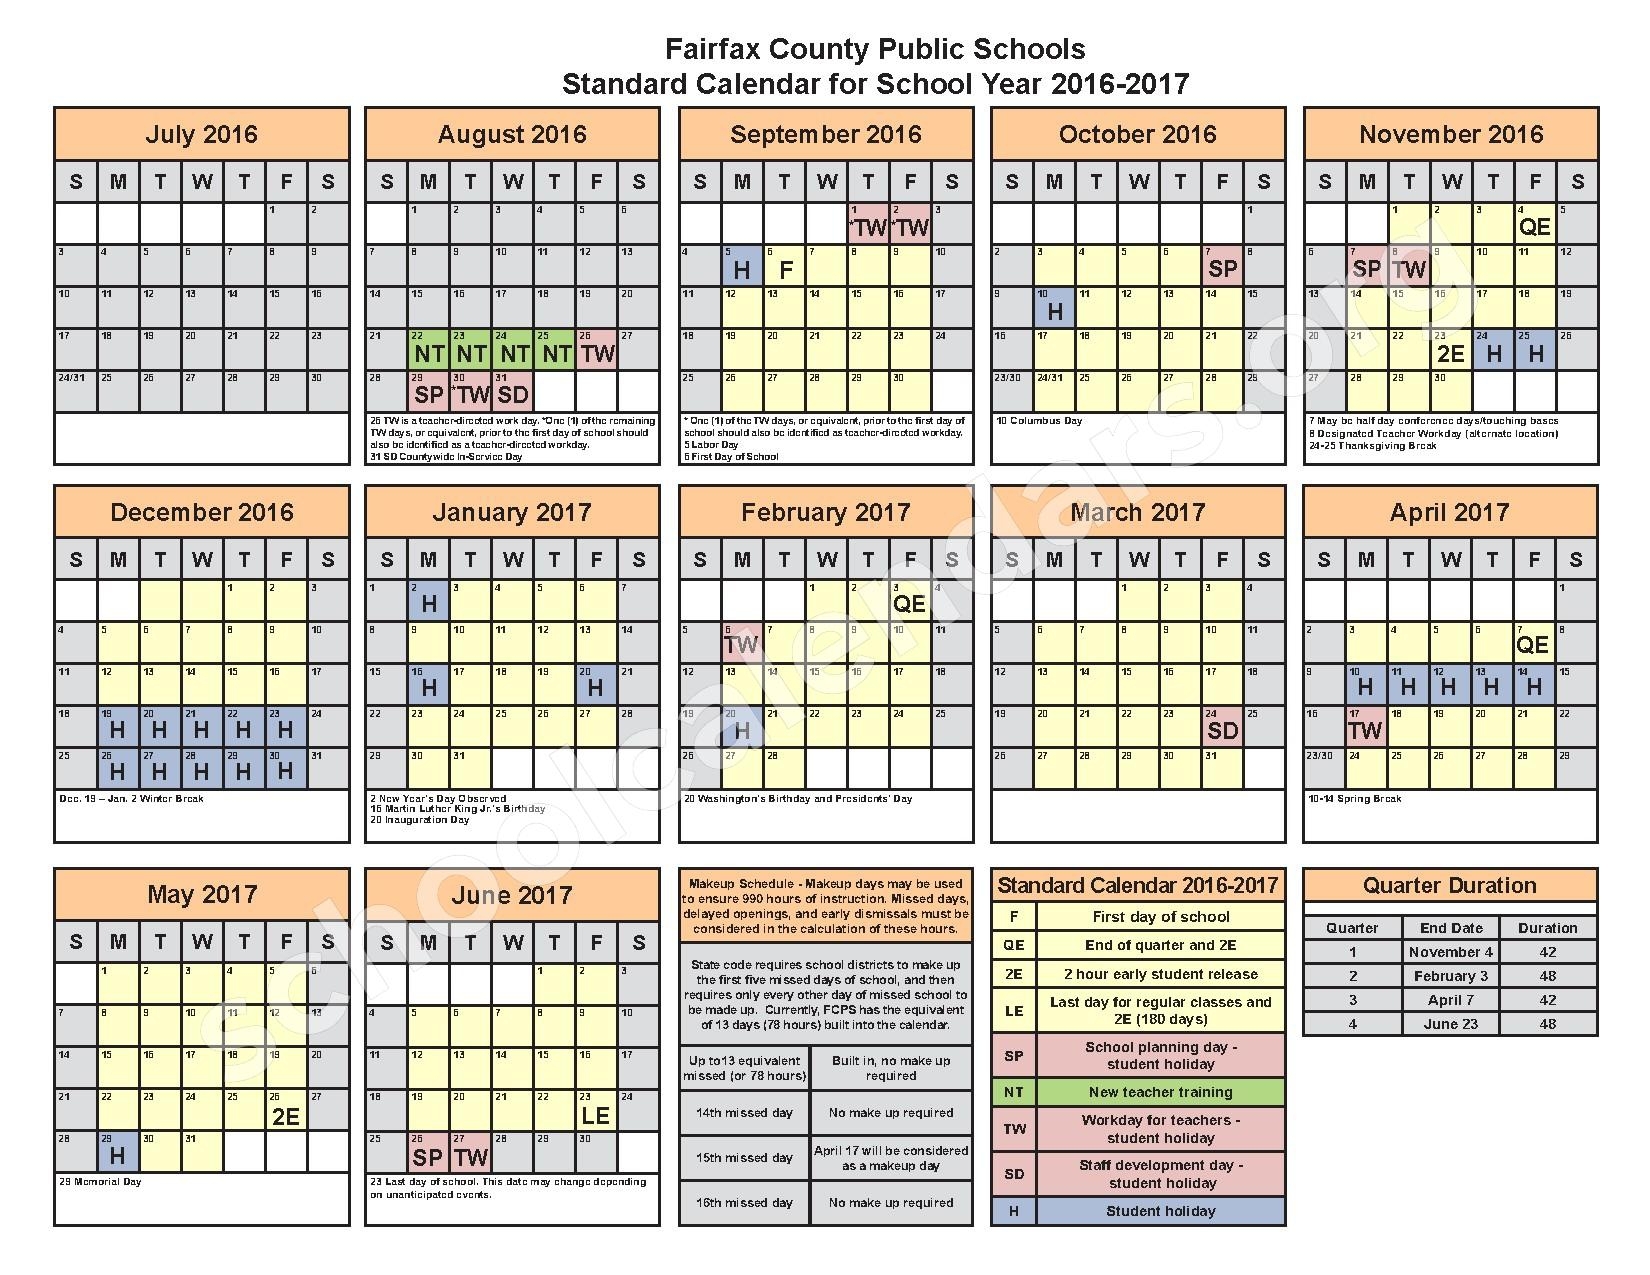 Fairfax County Public School Calendar Qualads